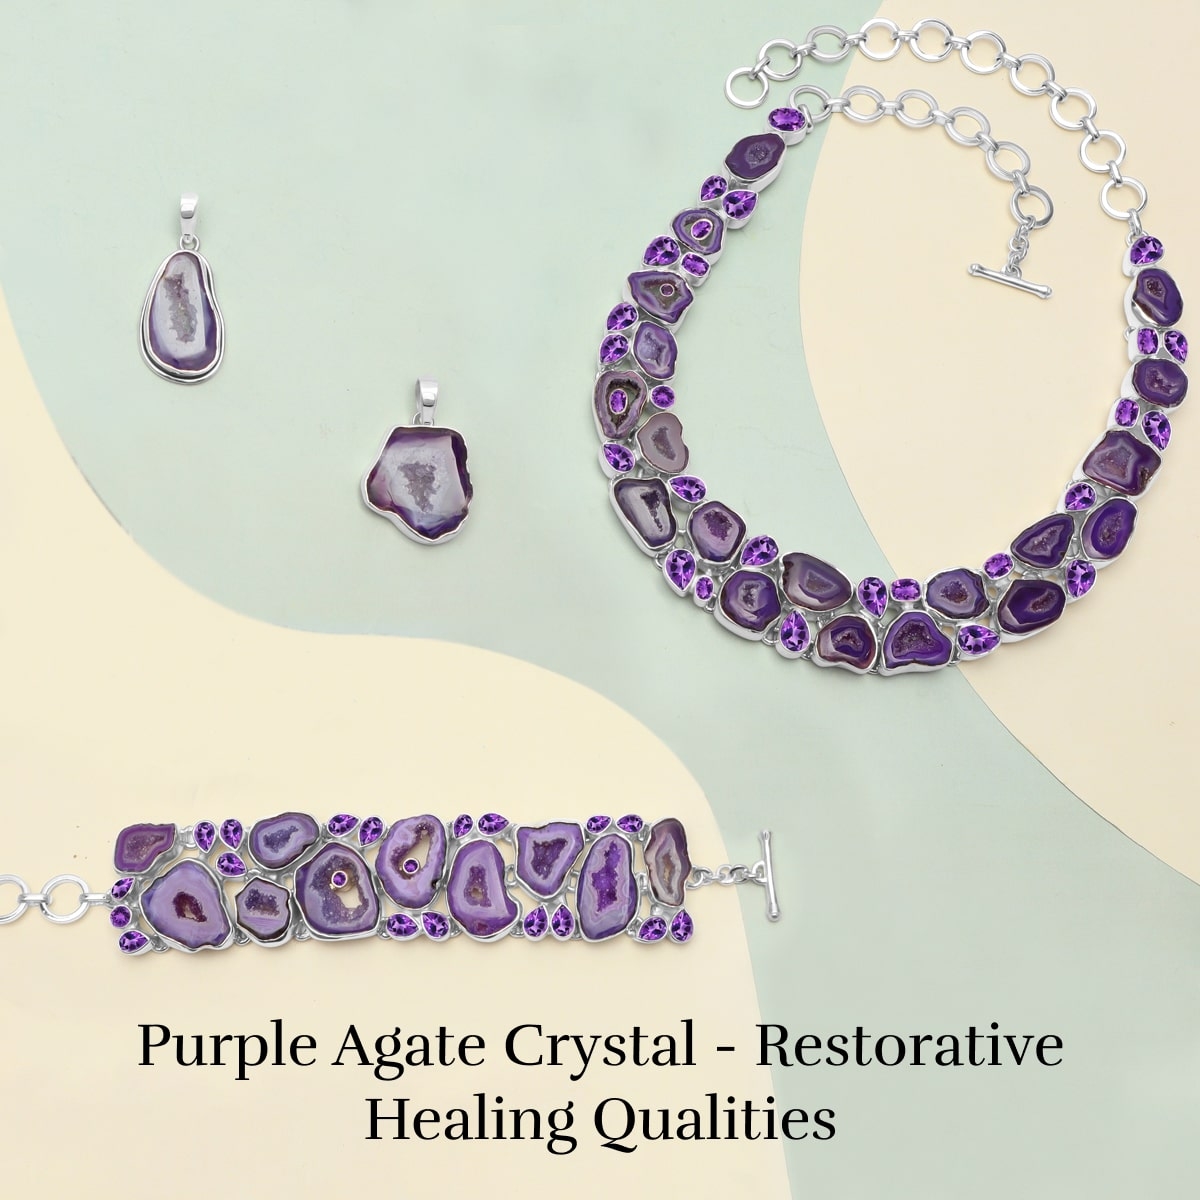 Healing Properties of Purple Agate Crystal